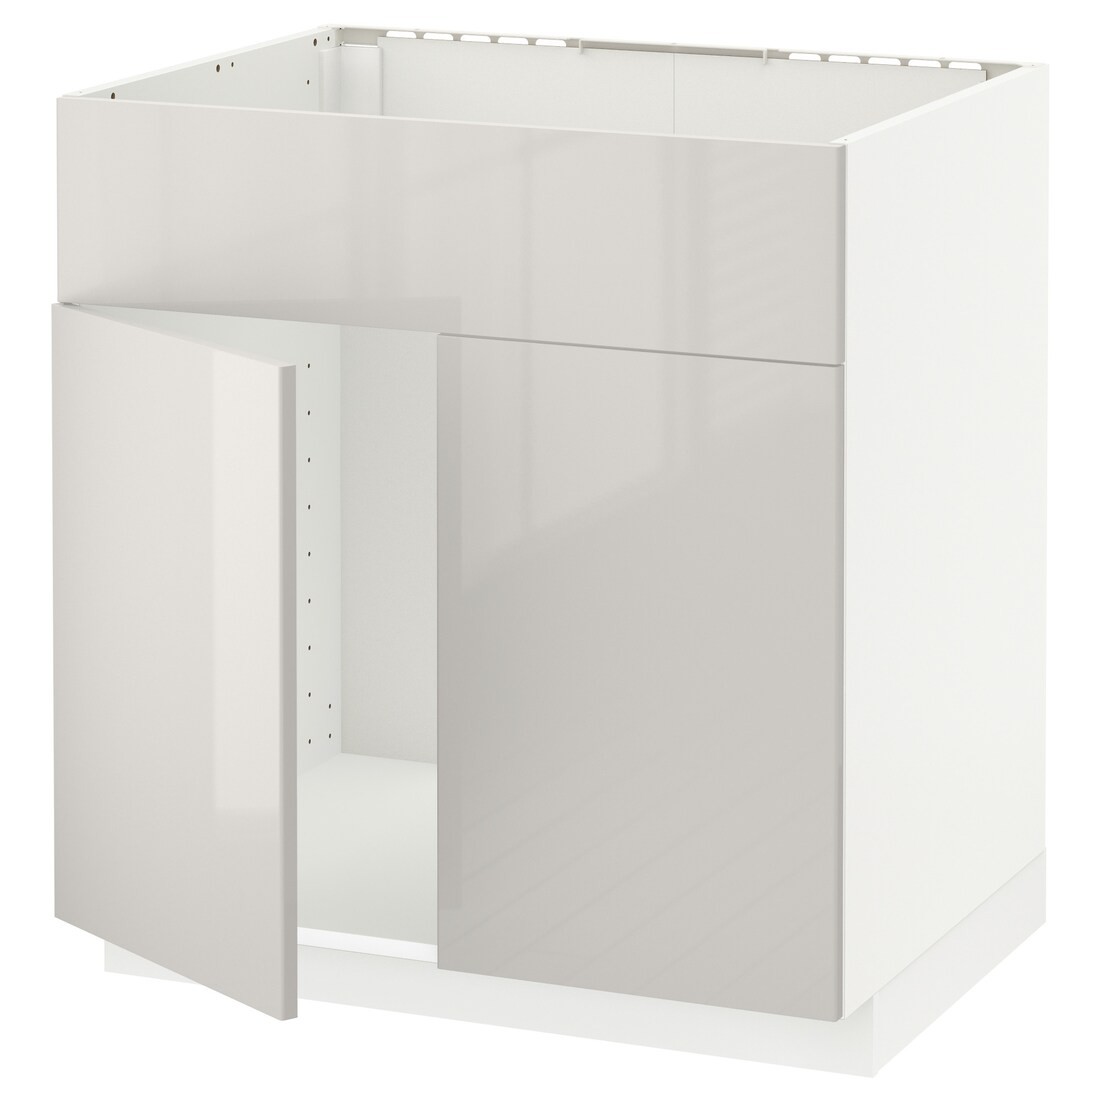 IKEA METOD МЕТОД Підлогова шафа під мийку, білий / Ringhult світло-сірий, 80x60 см 39462306 394.623.06